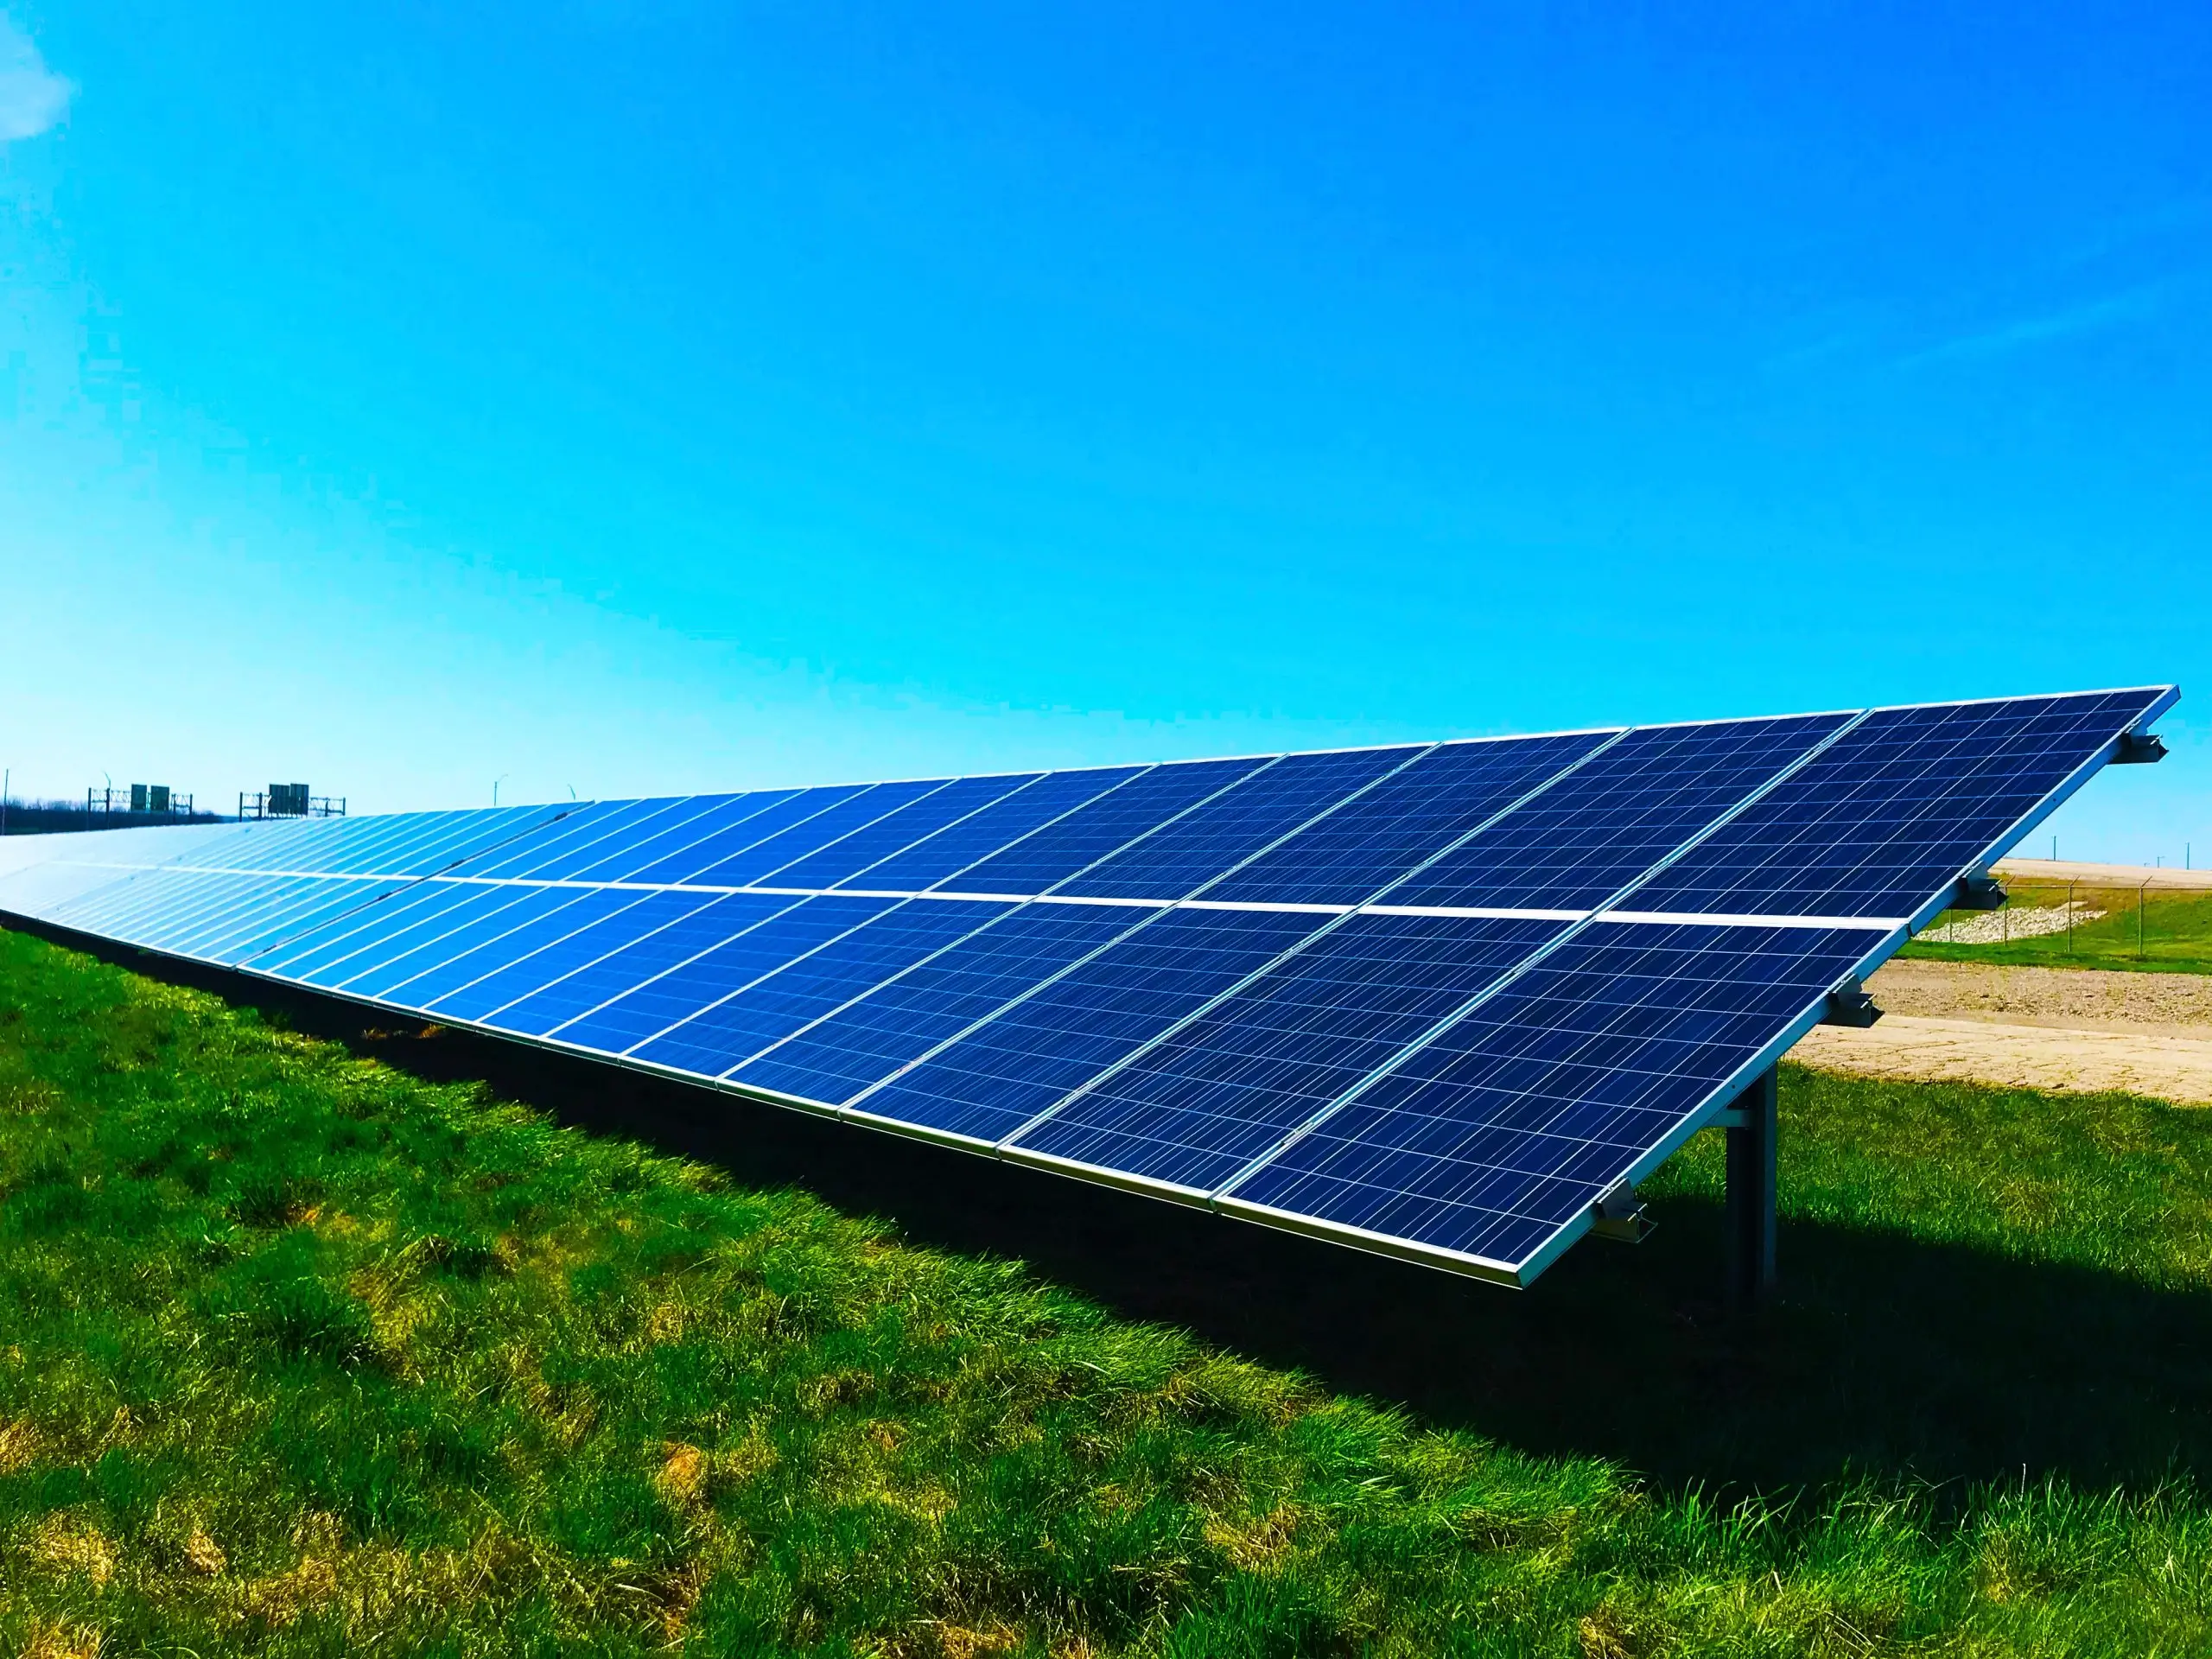 Solar panels in field array